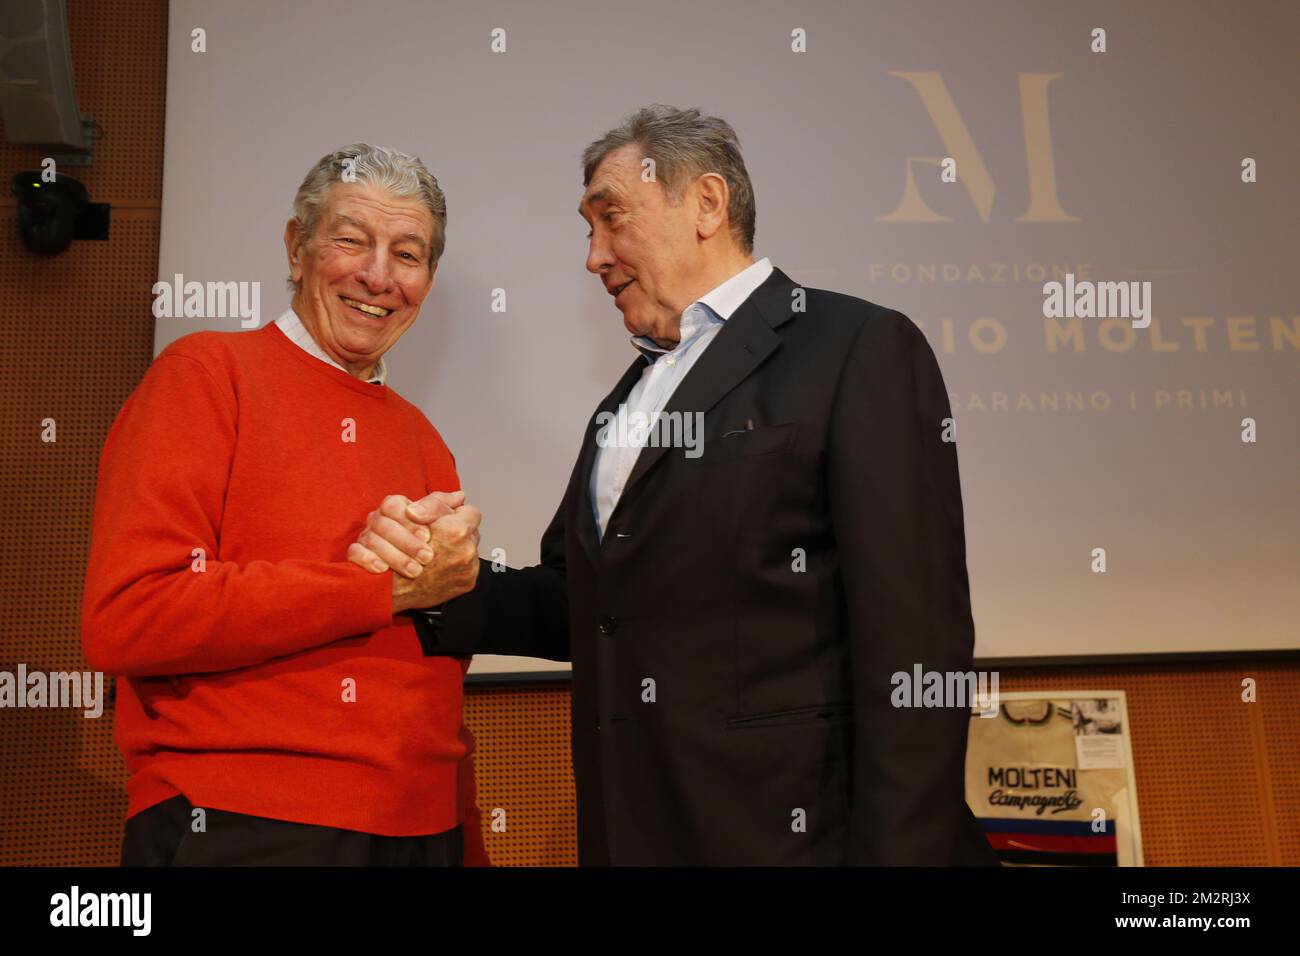 Felice Gimondi et Eddy Merckx photographiés lors des préparatifs avant l'édition 110th de demain de la course cycliste d'une journée 'Milano-Sanremo', à 294 km de Milan à Sanremo, Italie, vendredi 22 mars 2019. BELGA PHOTO YUZURU SUNADA Banque D'Images